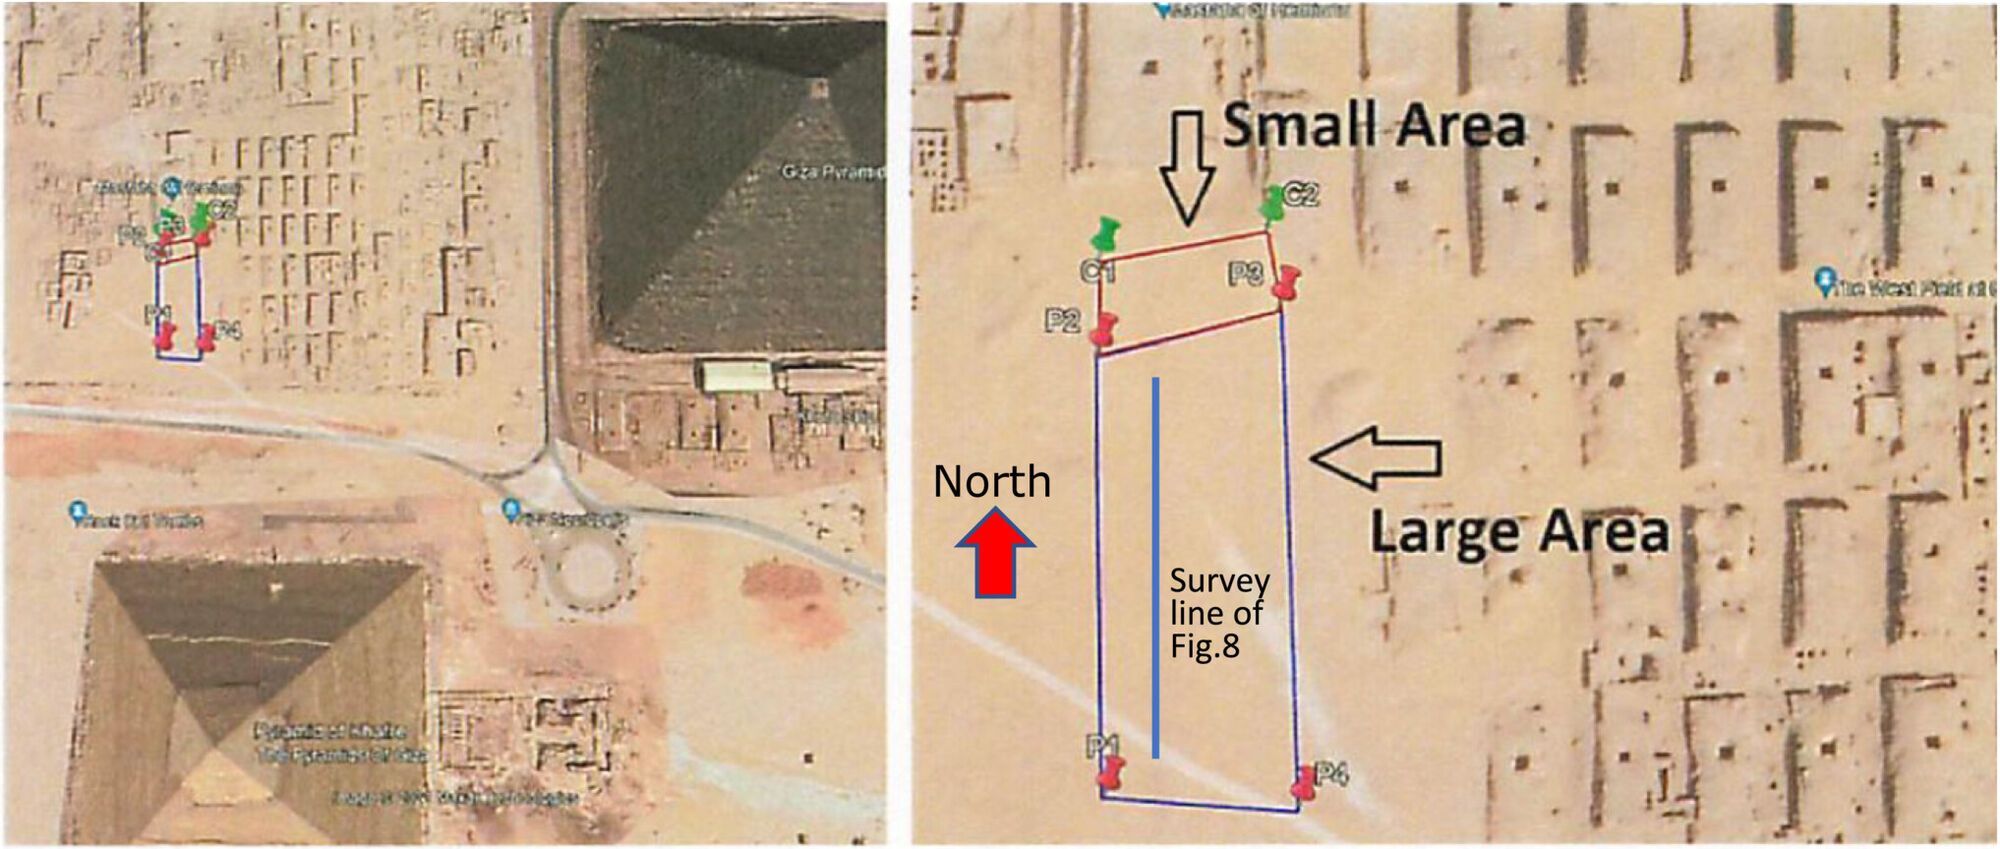 Возле пирамид Гизы нашли аномалии и загадочные структуры (фото)